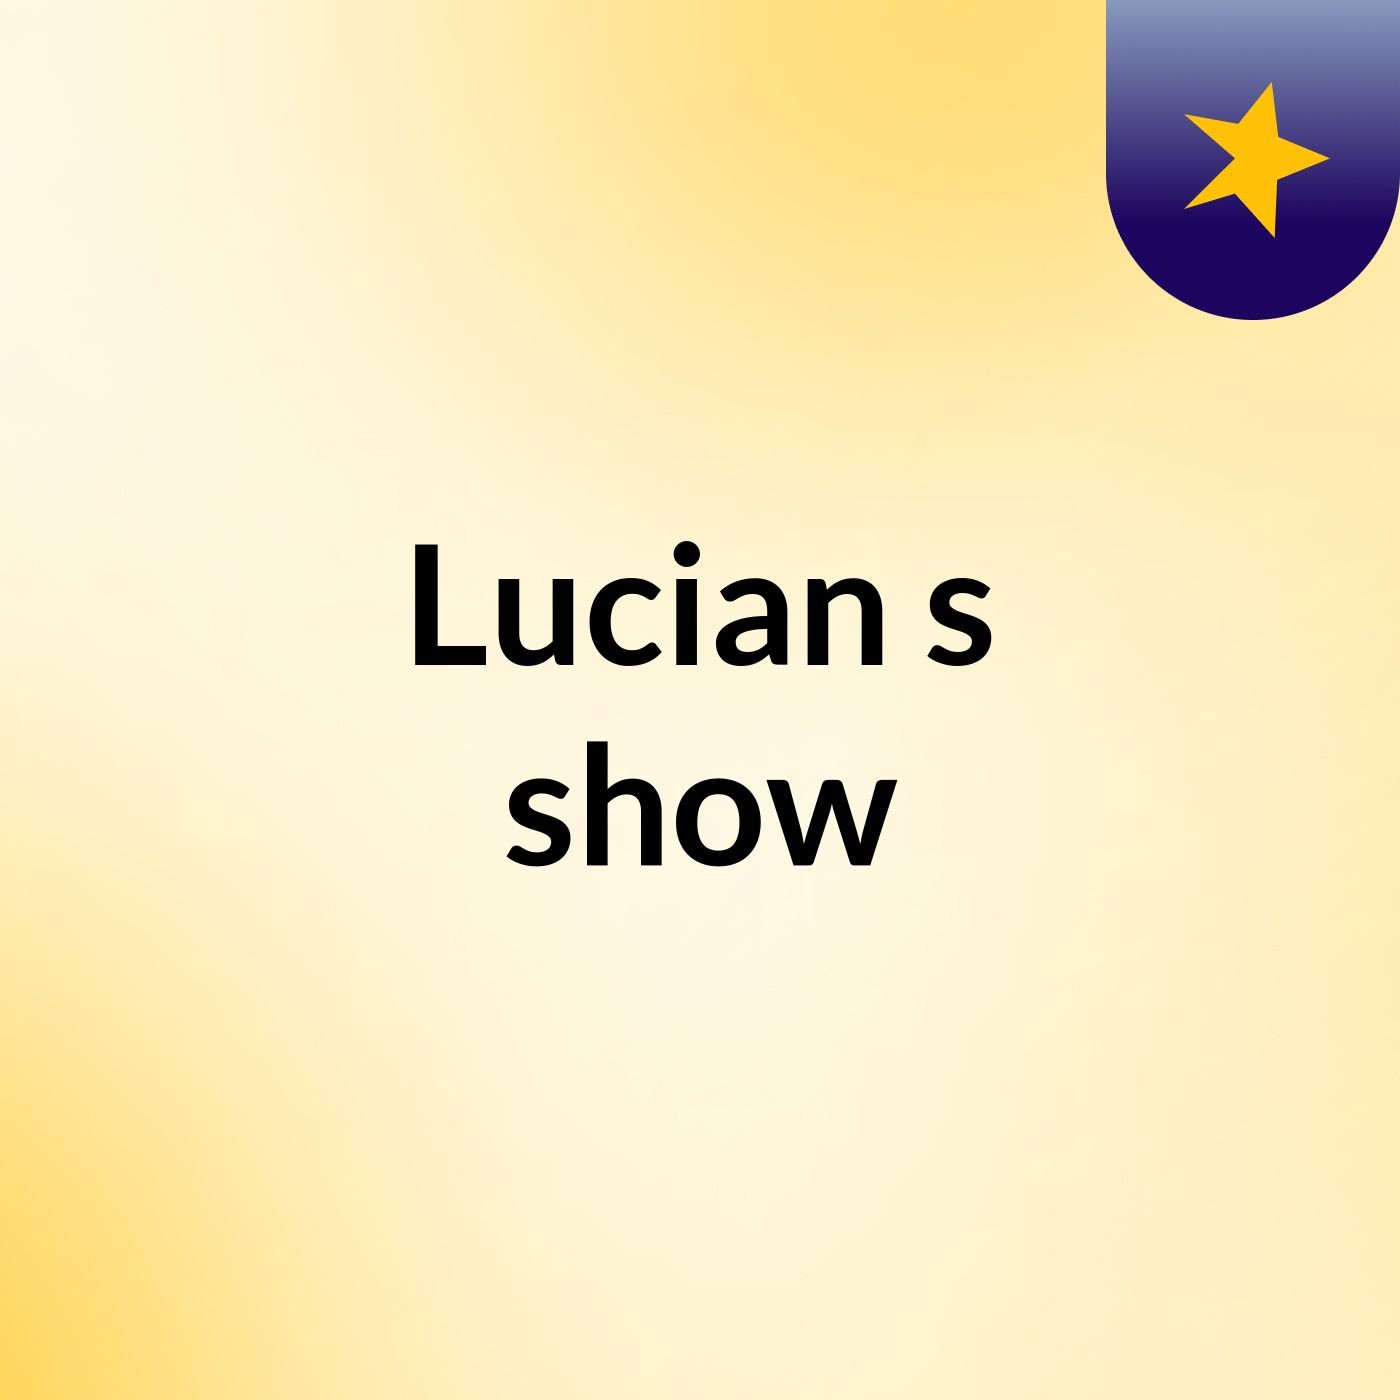 Lucian's show